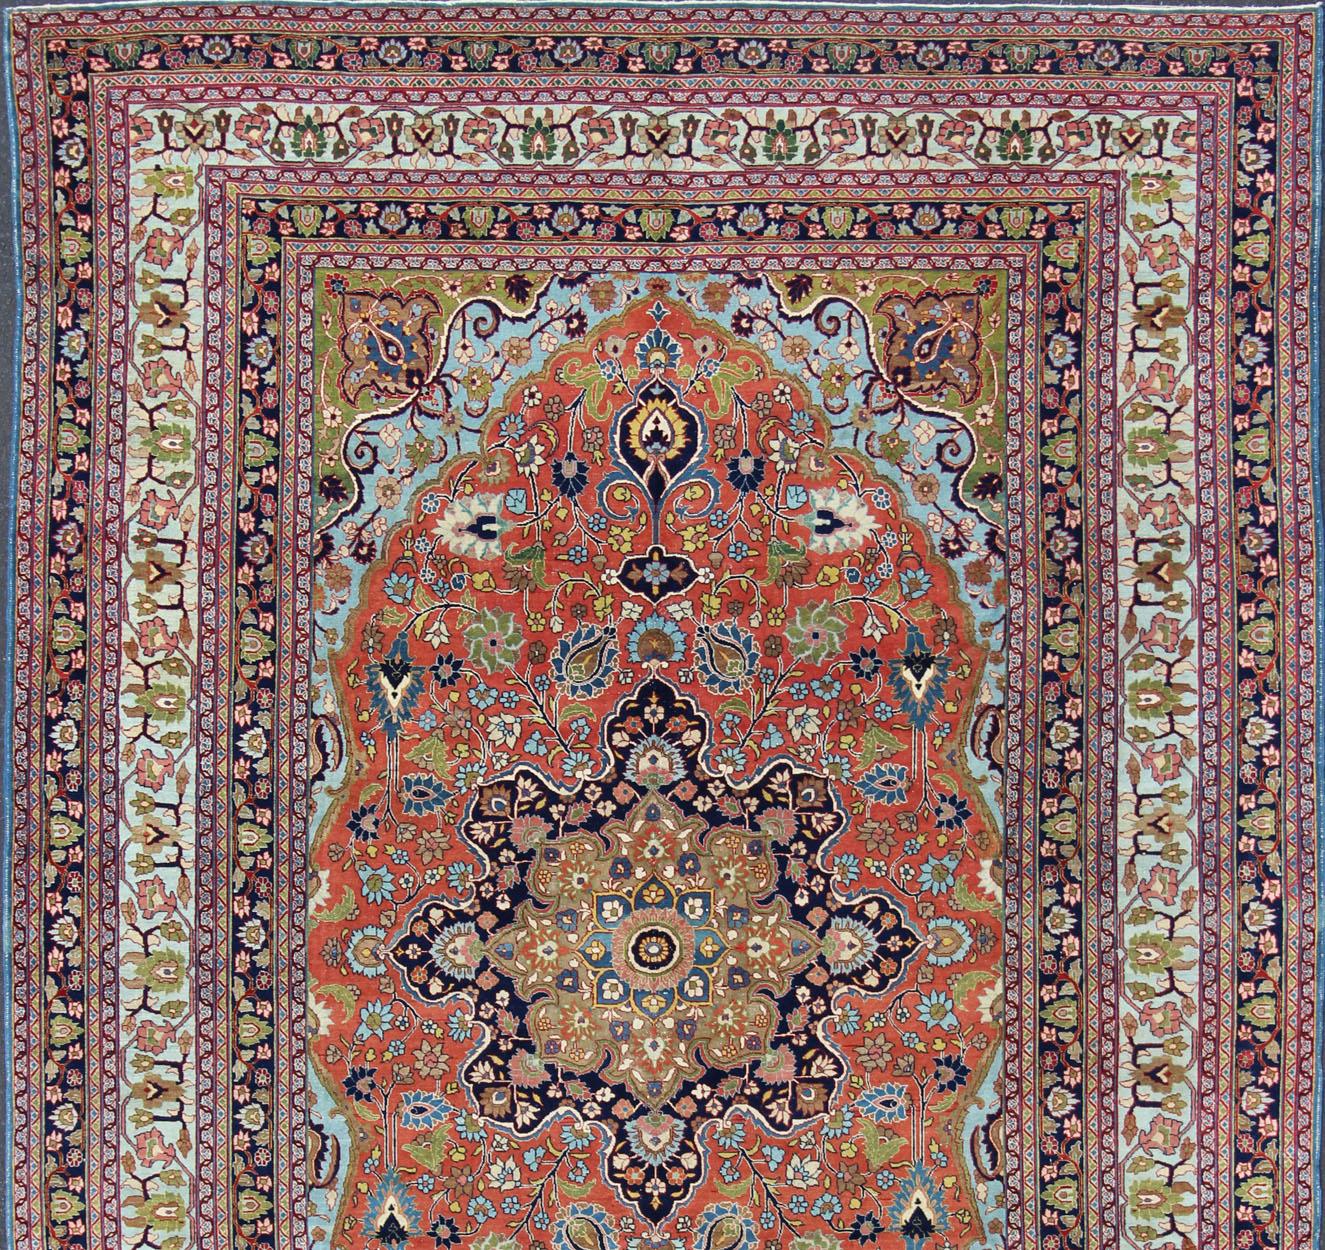 Tapis ancien de Tabriz finement tissé avec médaillon circulaire de style script et champ orange, Keivan Woven Arts/ tapis / 17-0304. Tapis persan classique, tapis persan traditionnel, Tabriz traditionnel.
Mesures : 10'1 x 14'2
Ce tapis persan Tabriz